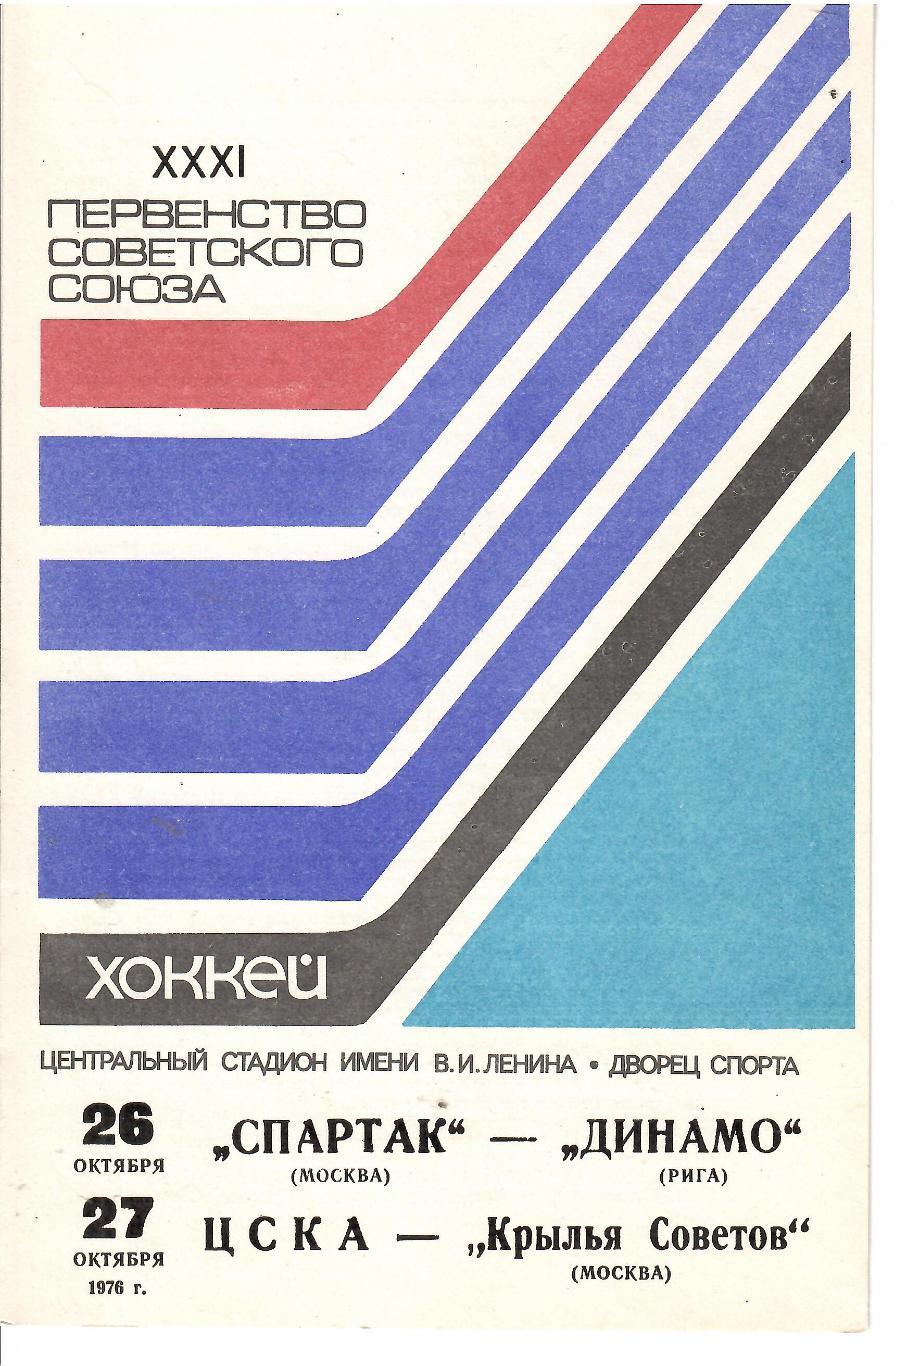 1976 Хоккей Спартак Москва - Динамо Москва - ЦСКА - Крылья Советов